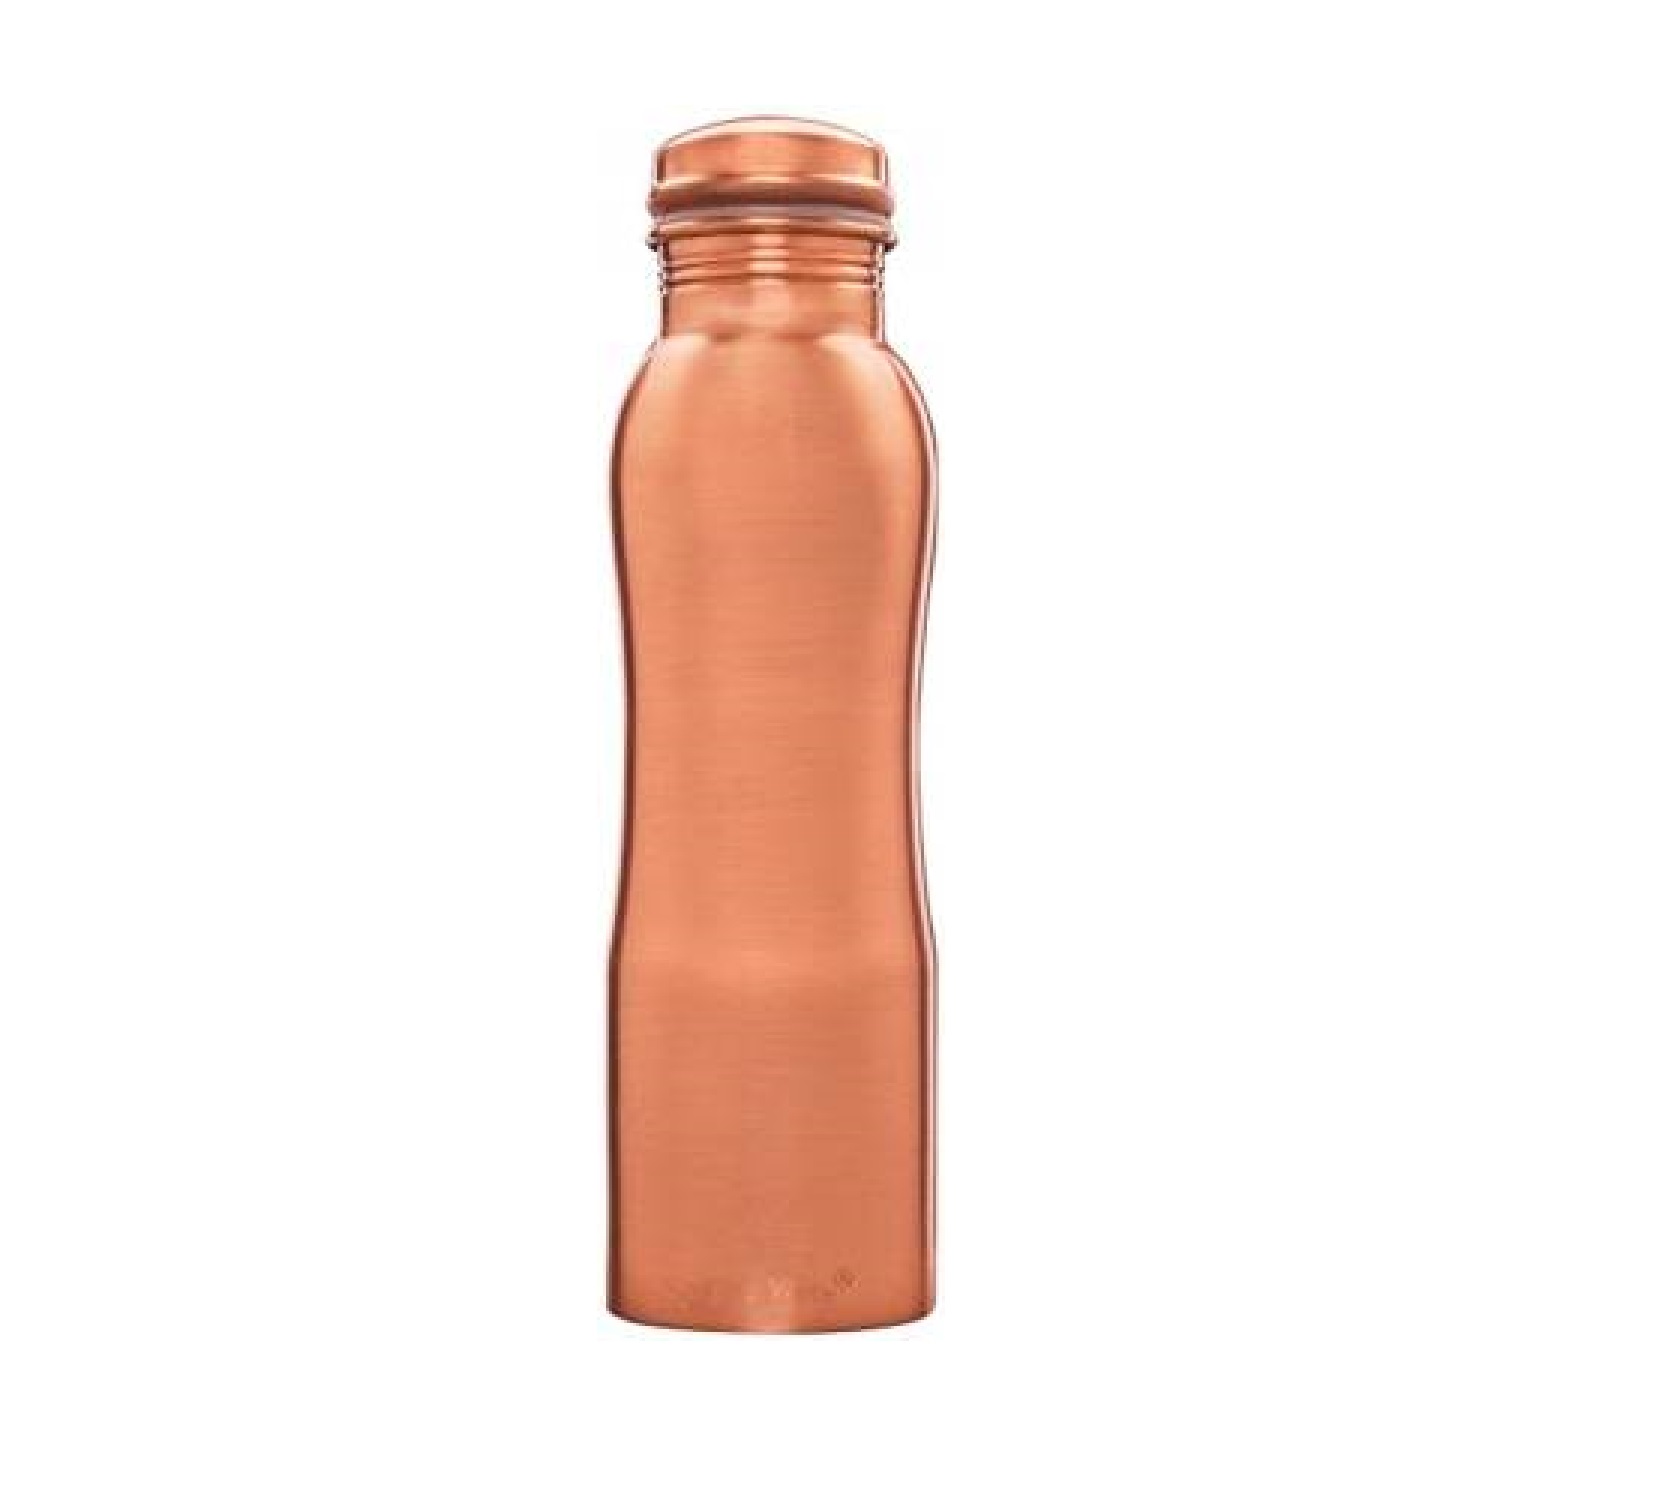 Signoraware Oxy Copper Bottle Matt 900ml